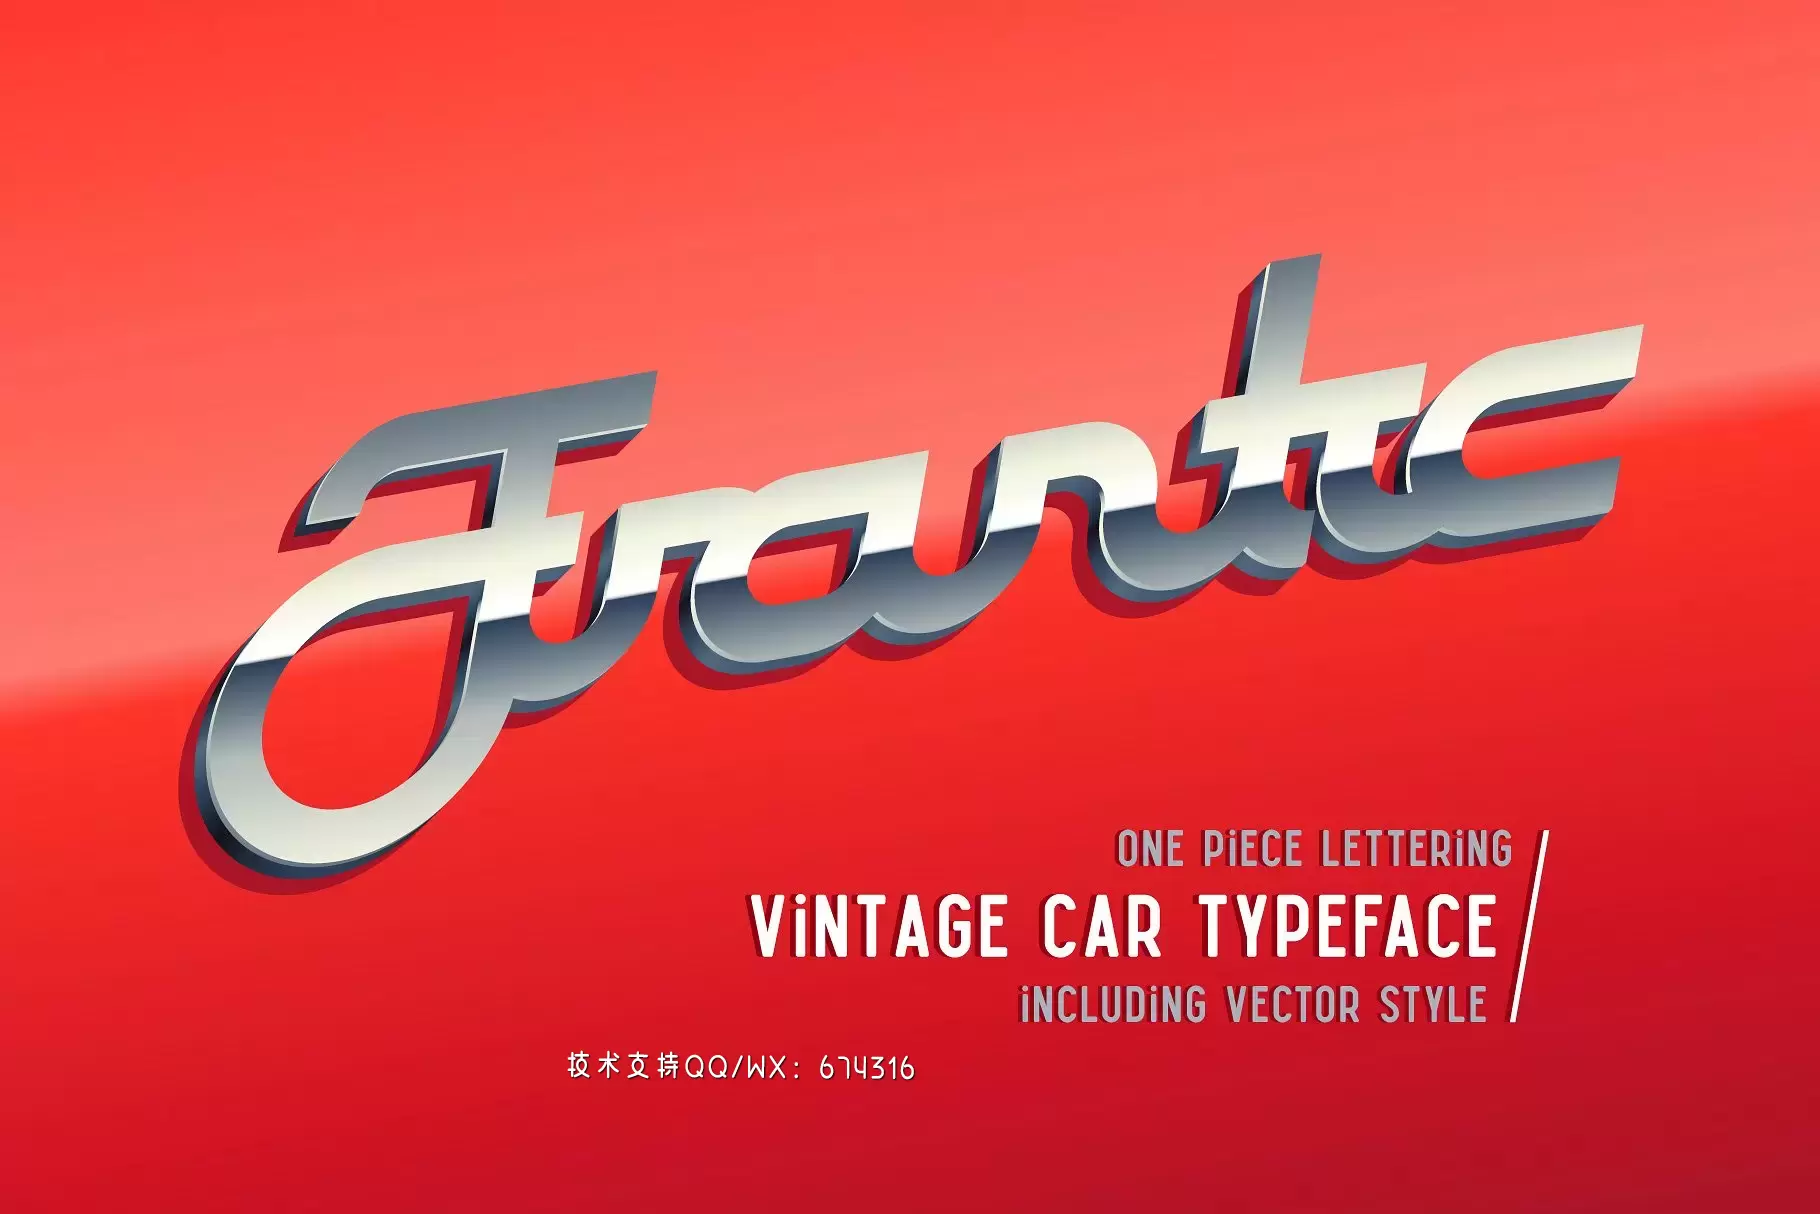 疯狂的设计字体 Frantic vintage typeface免费下载